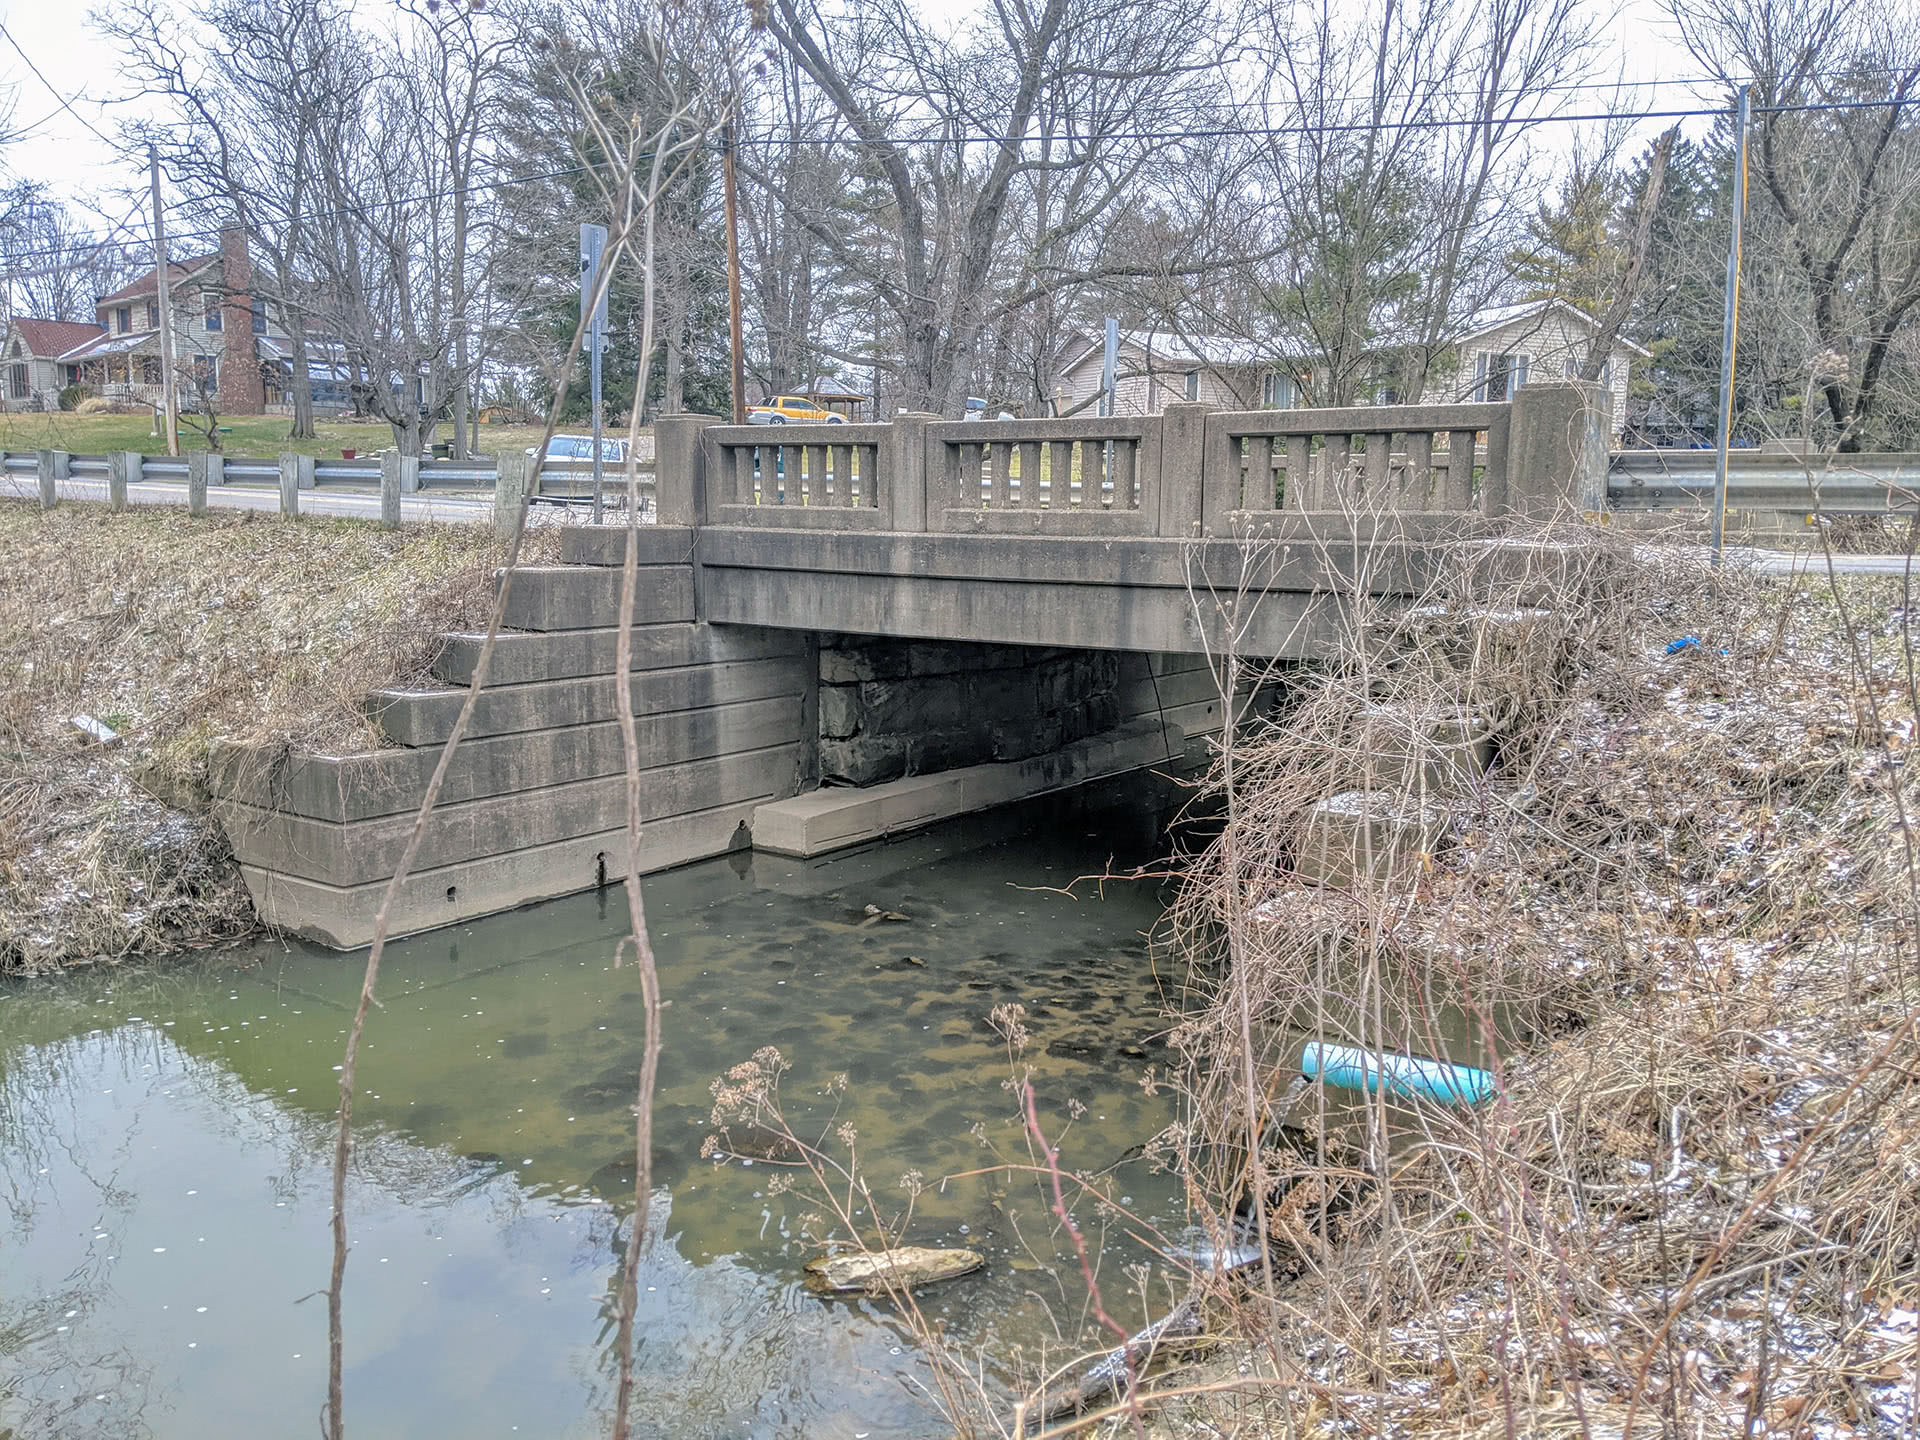 Case Road Bridge Replacement